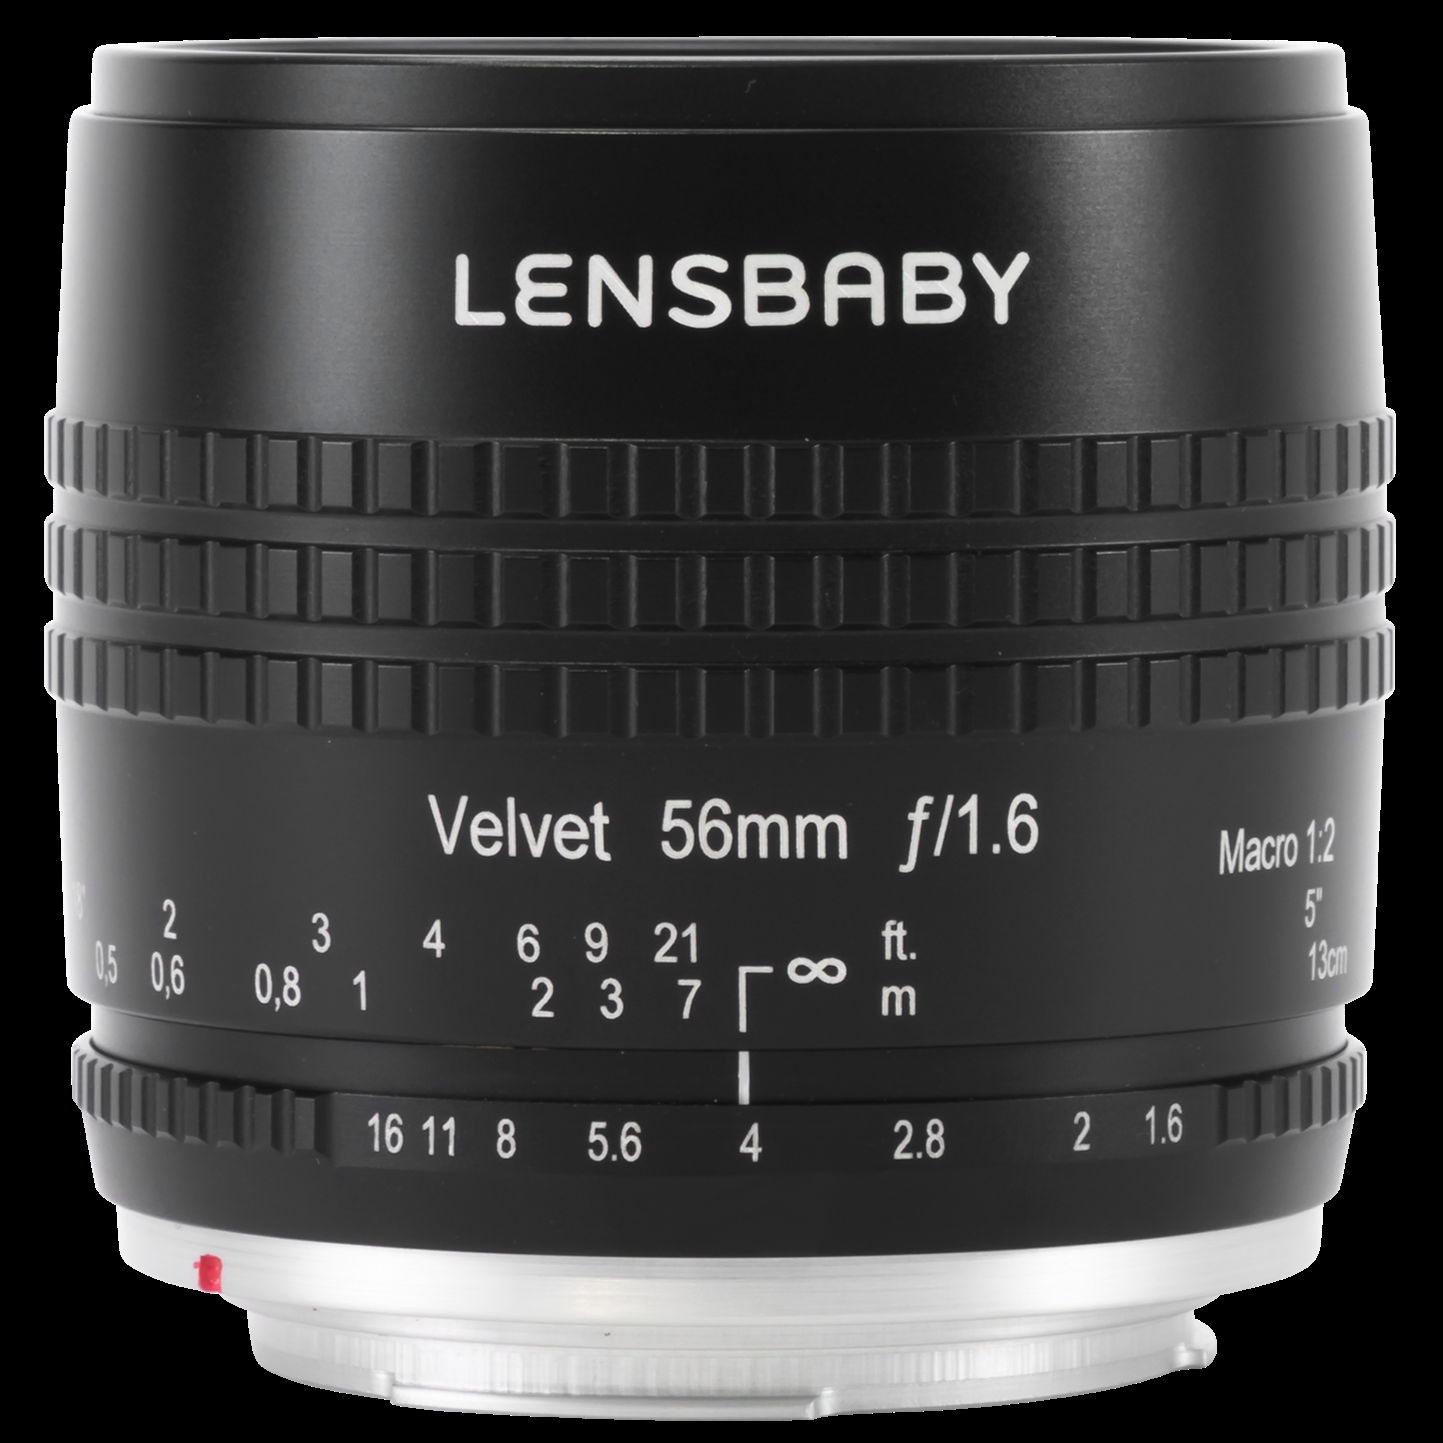 Lensbaby Velvet 56mm f/1.6 Lens for Nikon Z